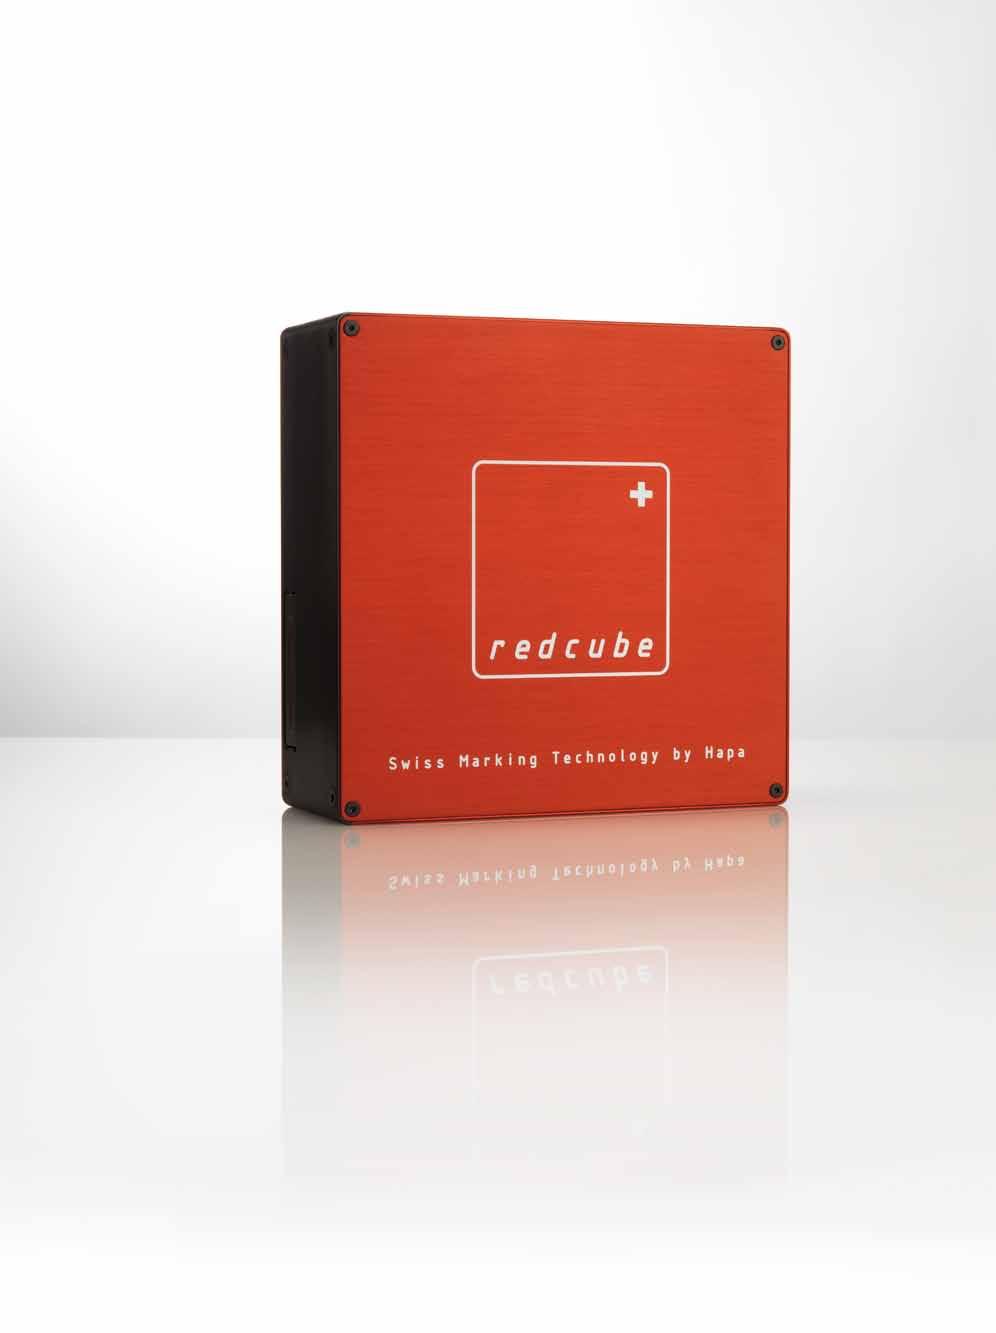 redcube setzt neue Massstäbe... Mit redcube, dem kompakten UV DoD Piezo Inkjet-Drucker, erzielen Sie hochwertige Druckergebnisse.